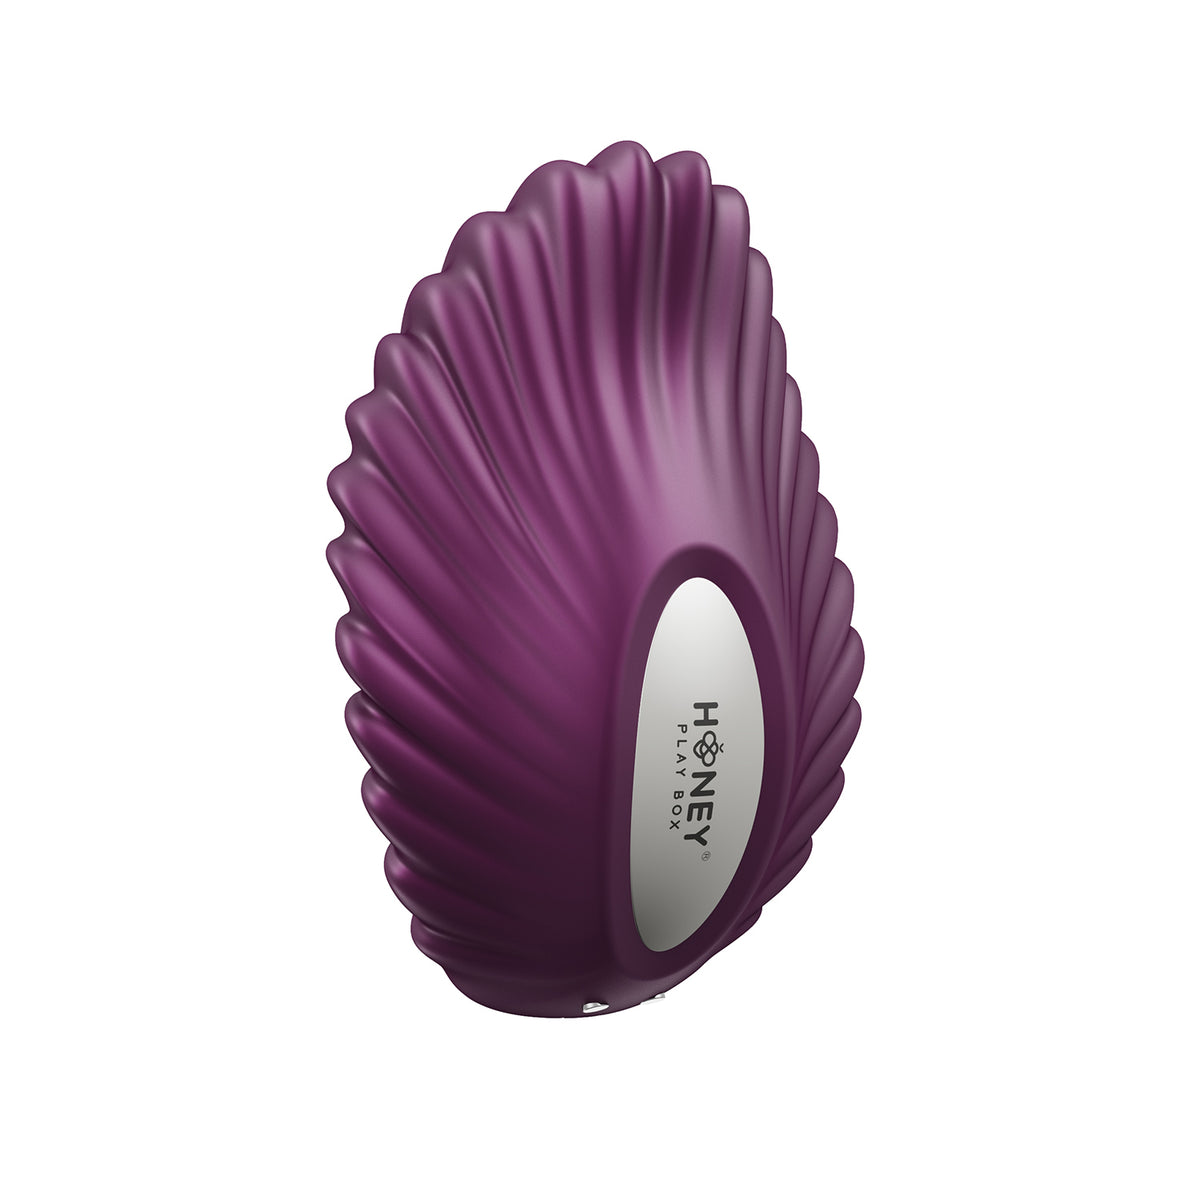 Pearl - Vibrador de bragas controlado por aplicación - Púrpura